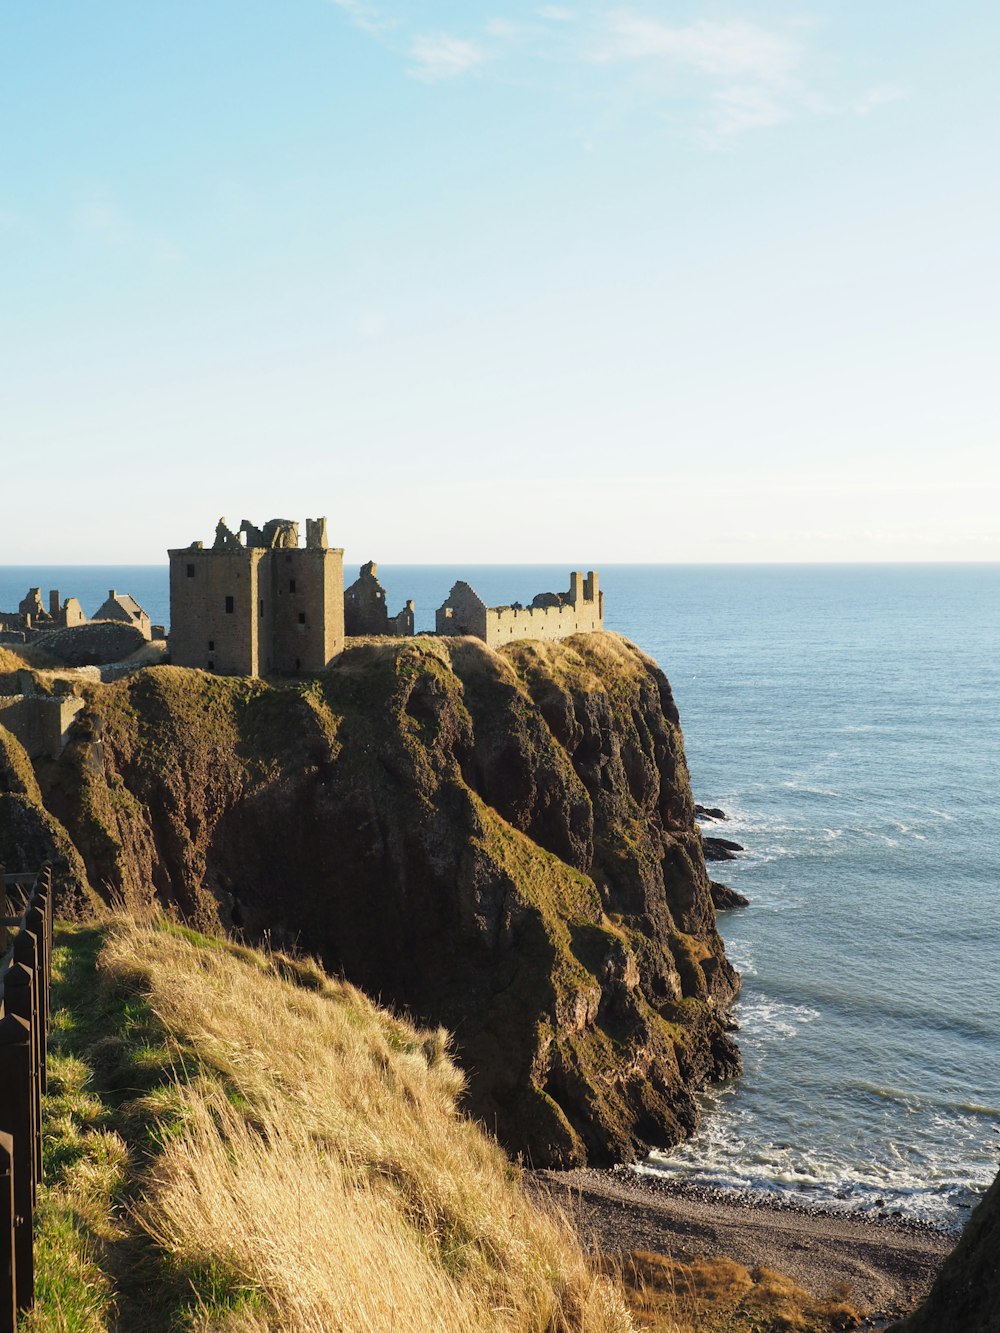 Braune Burg auf dem Hügel am Meer